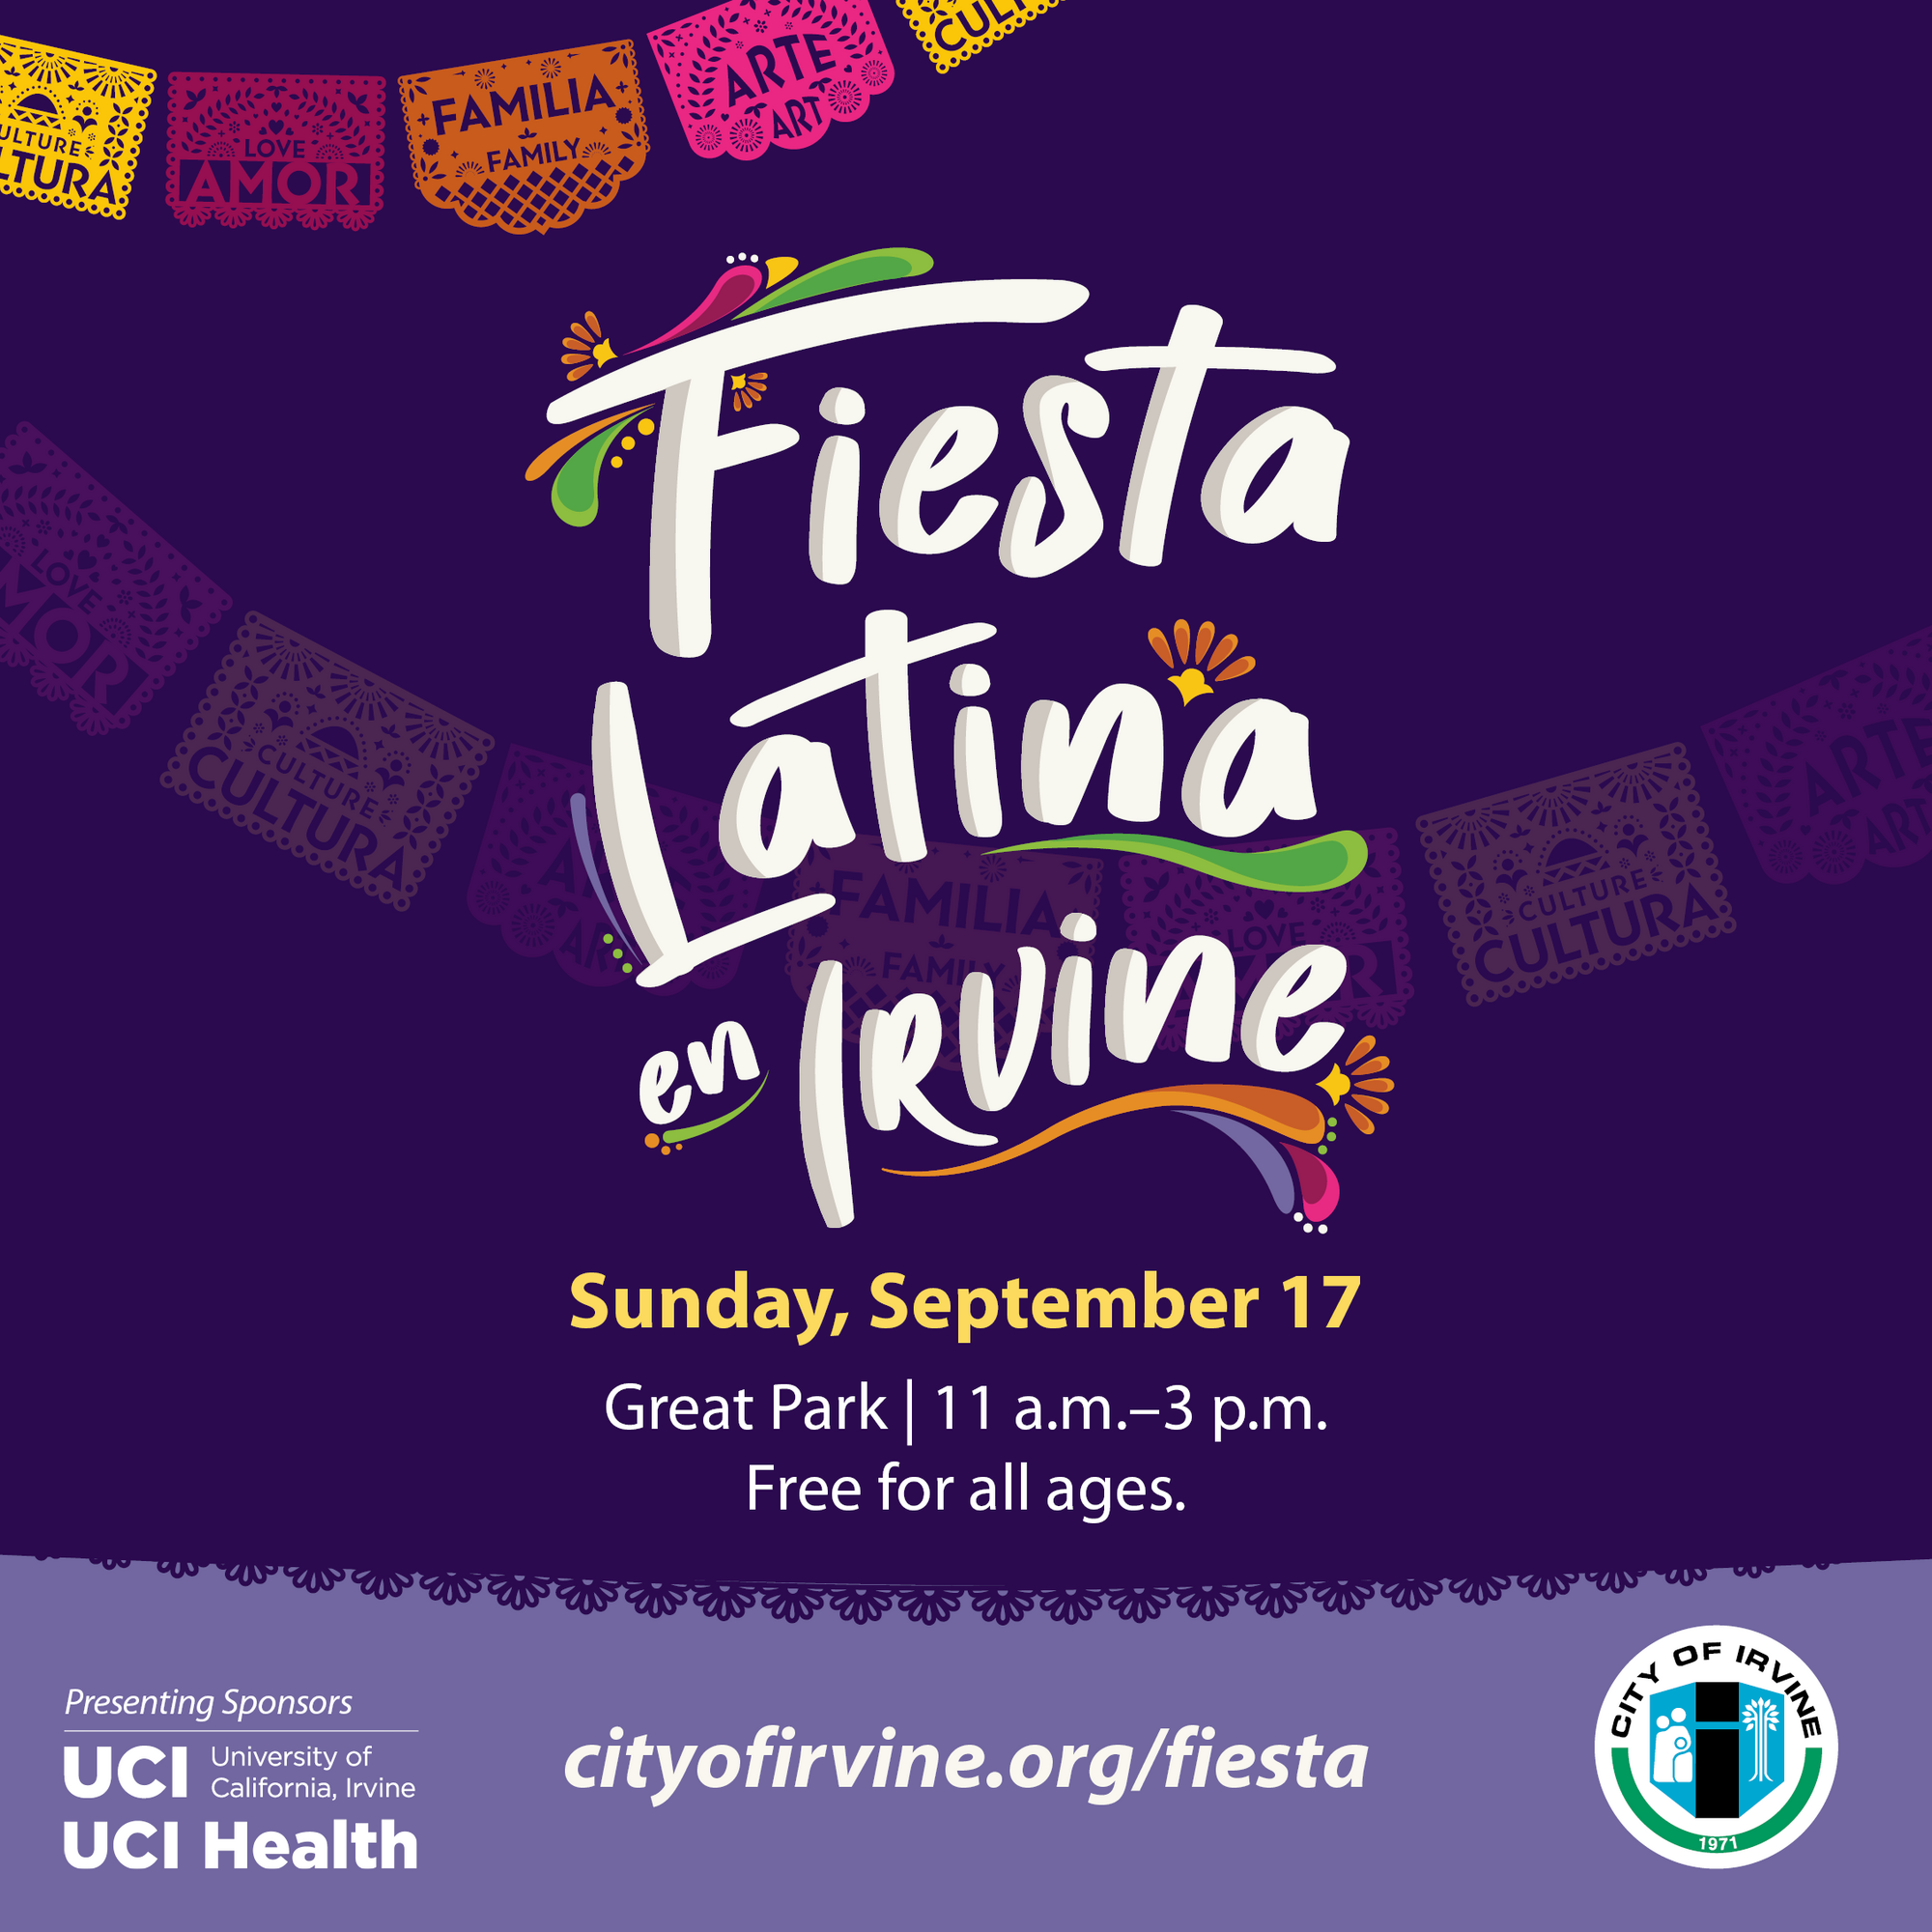 Fiesta Latina en Irvine